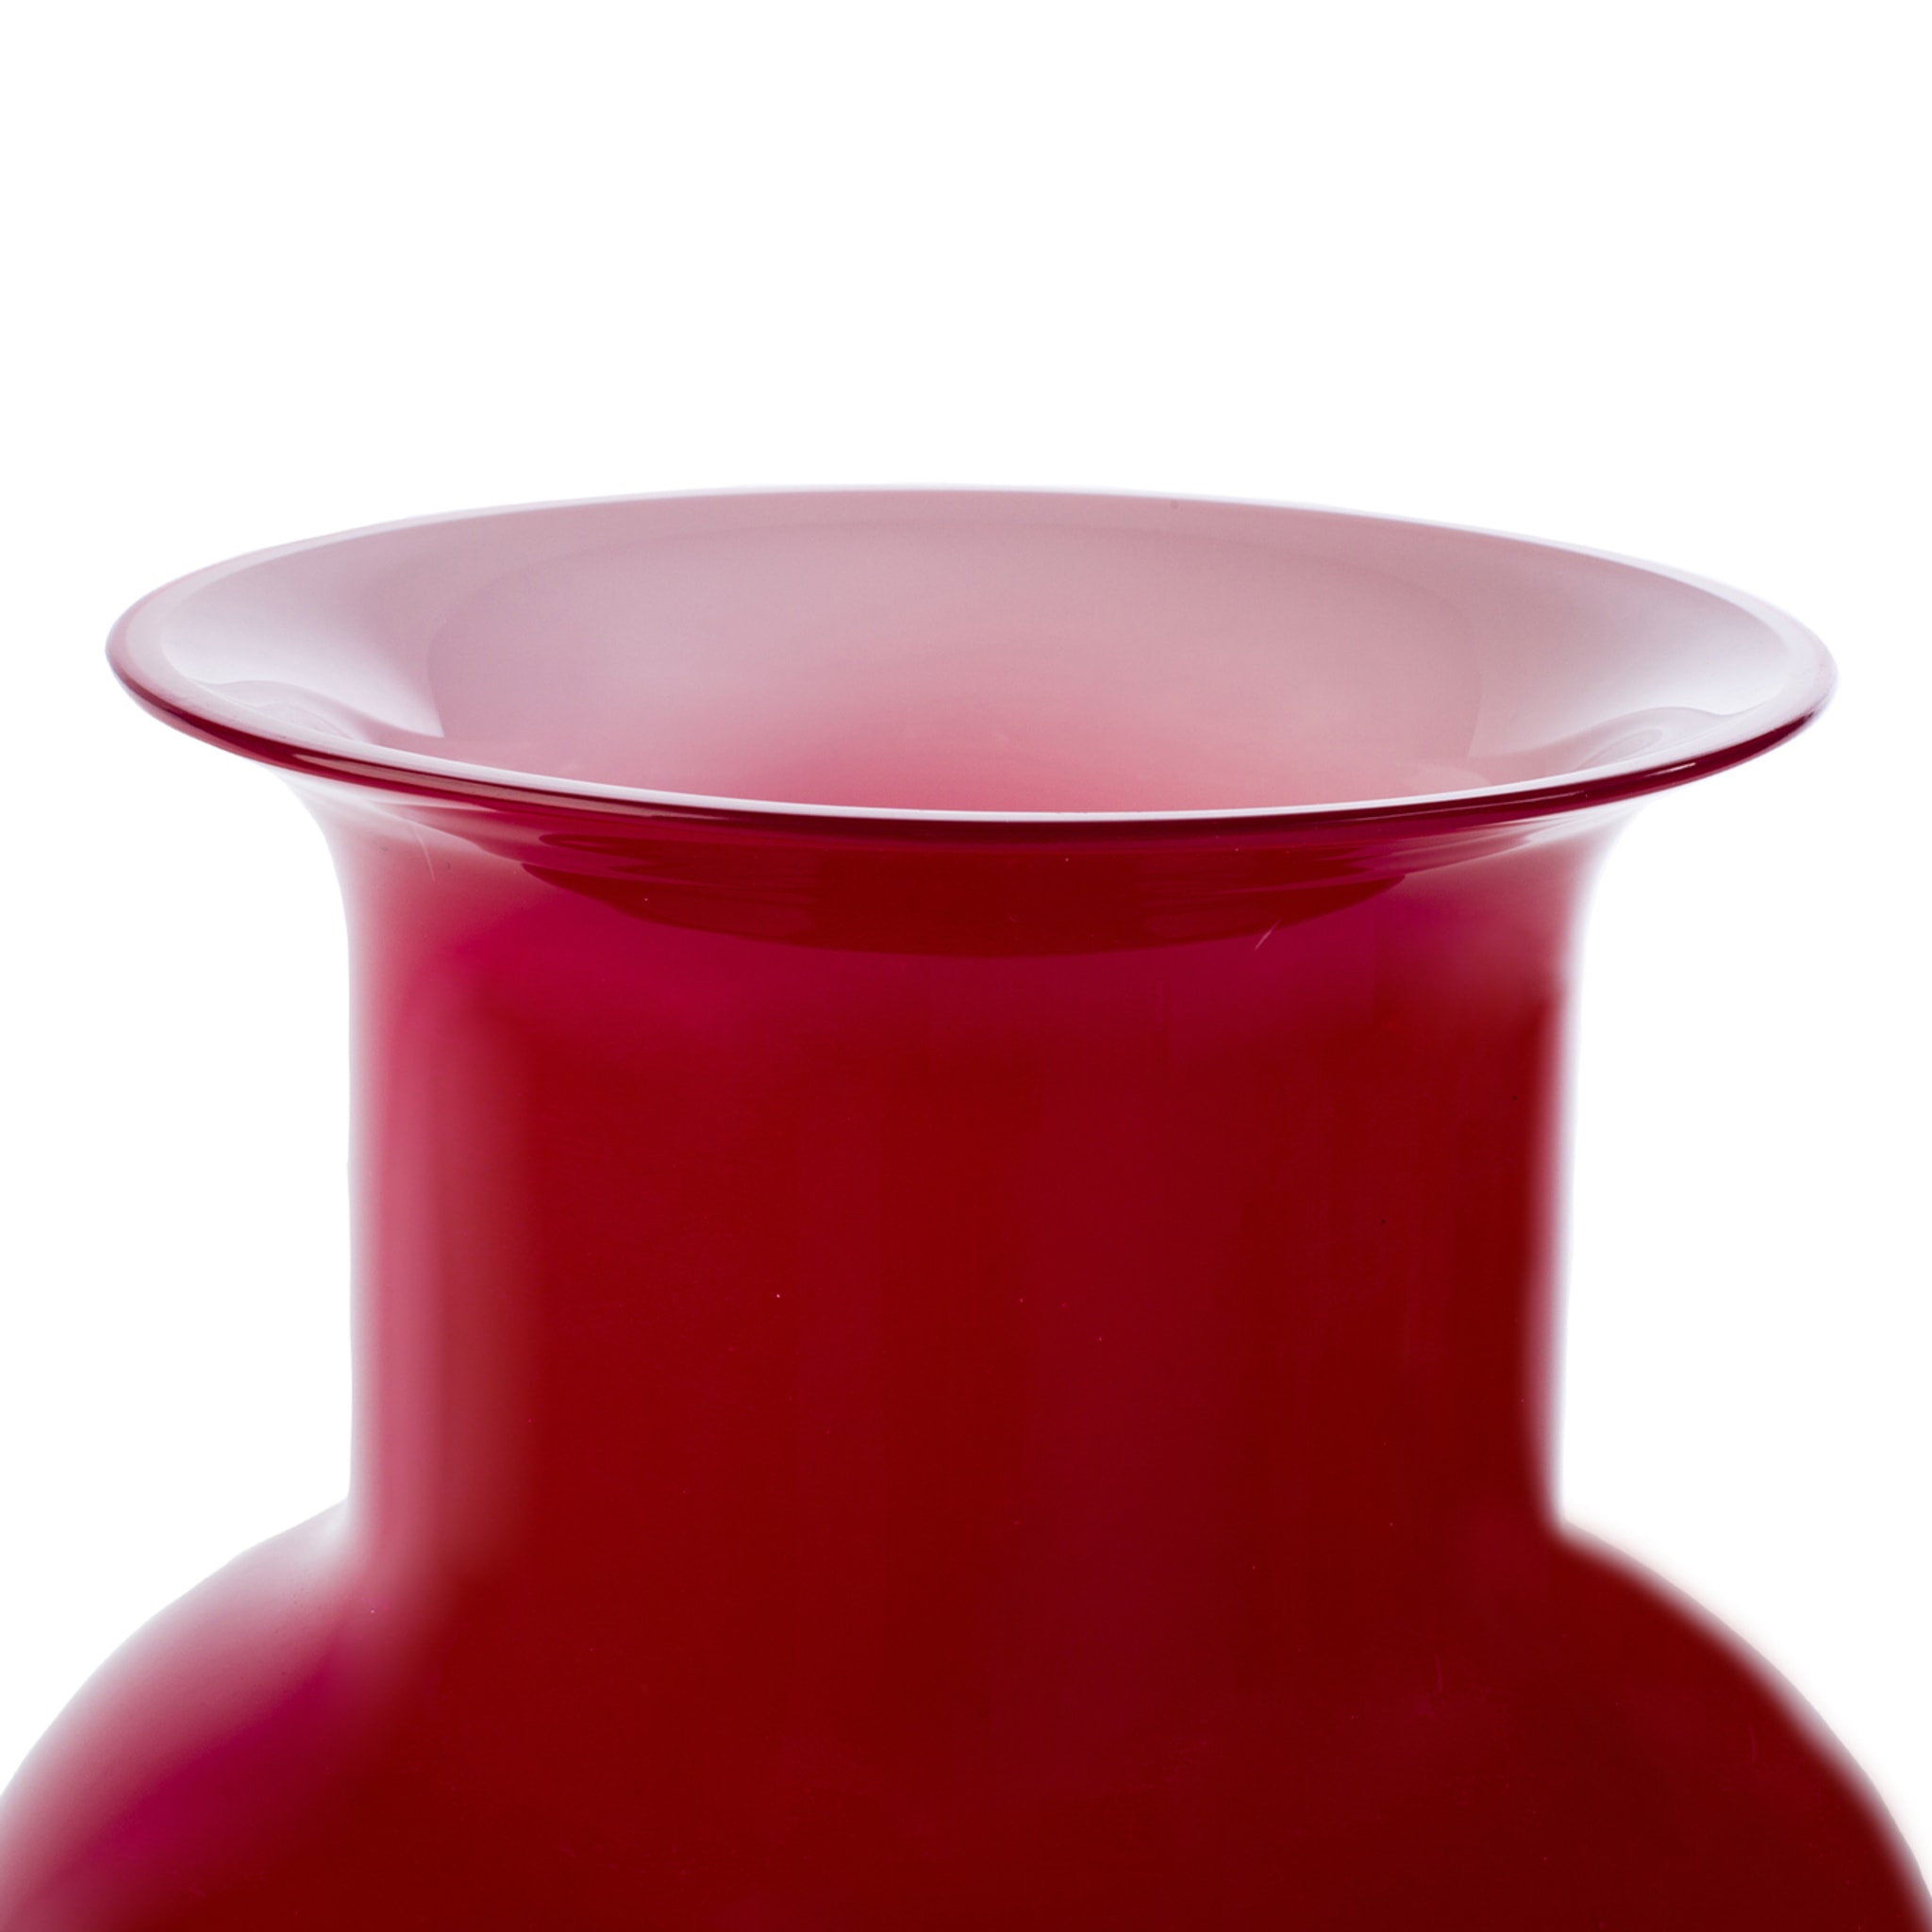 Demajo Incamiciato Red and White Vase - Alternative view 4